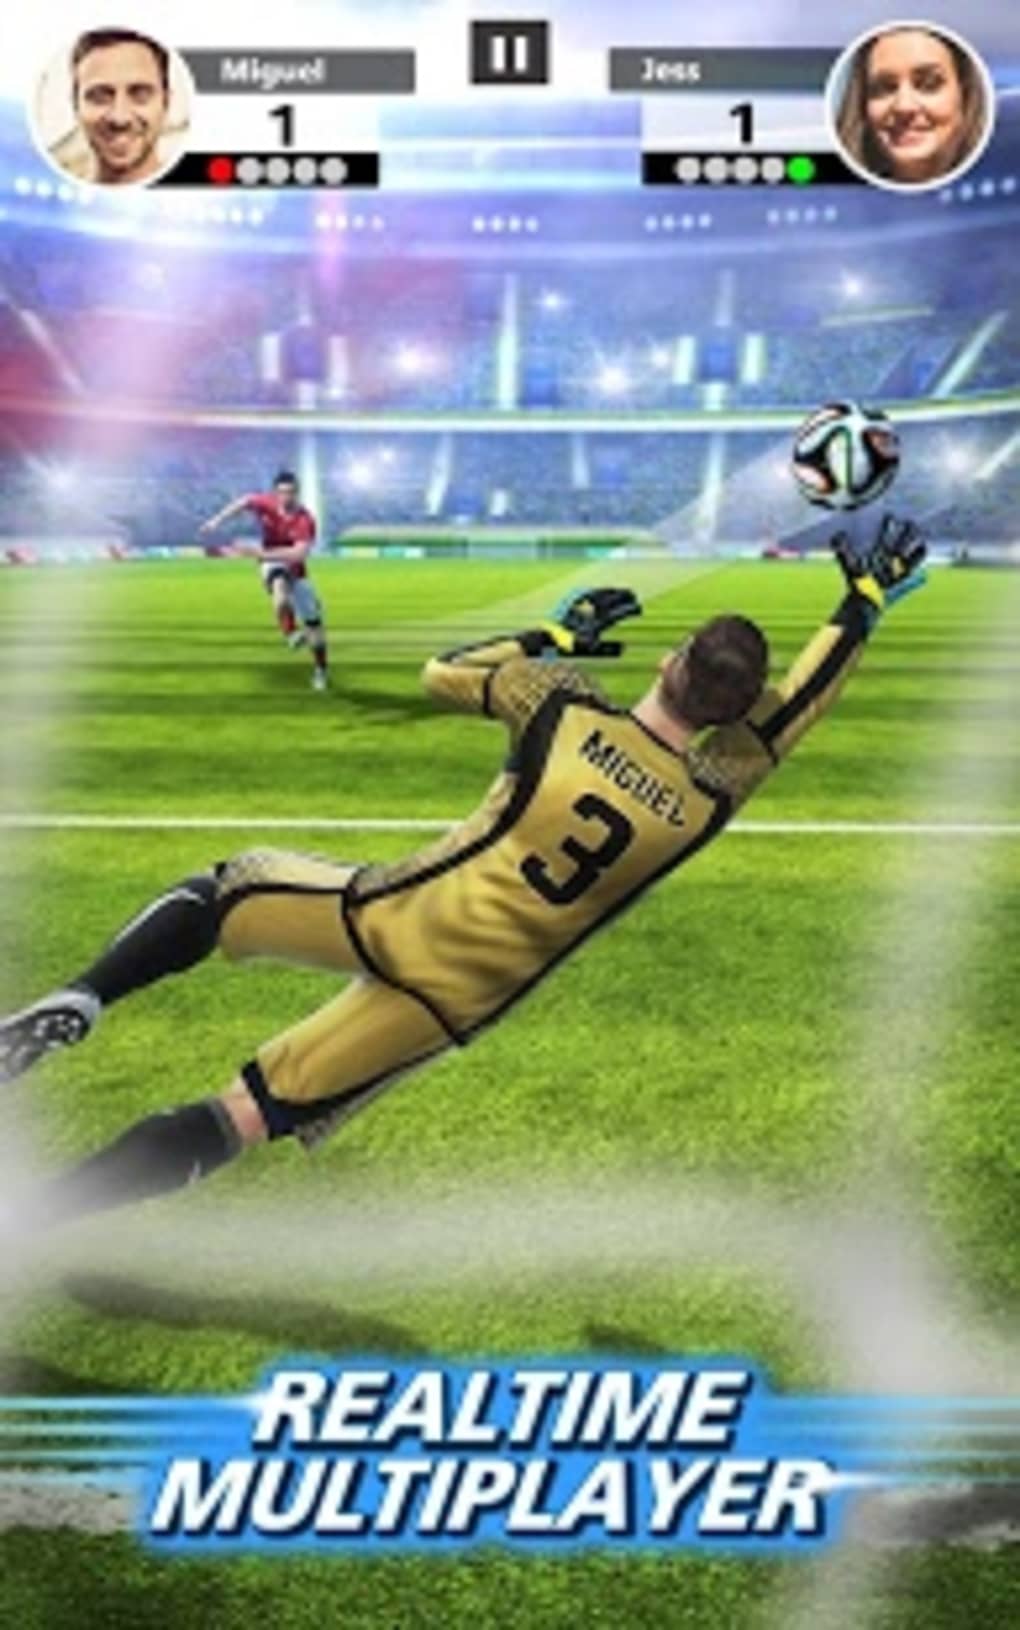 Jogos de Futebol Multiplayer APK (Android Game) - Baixar Grátis